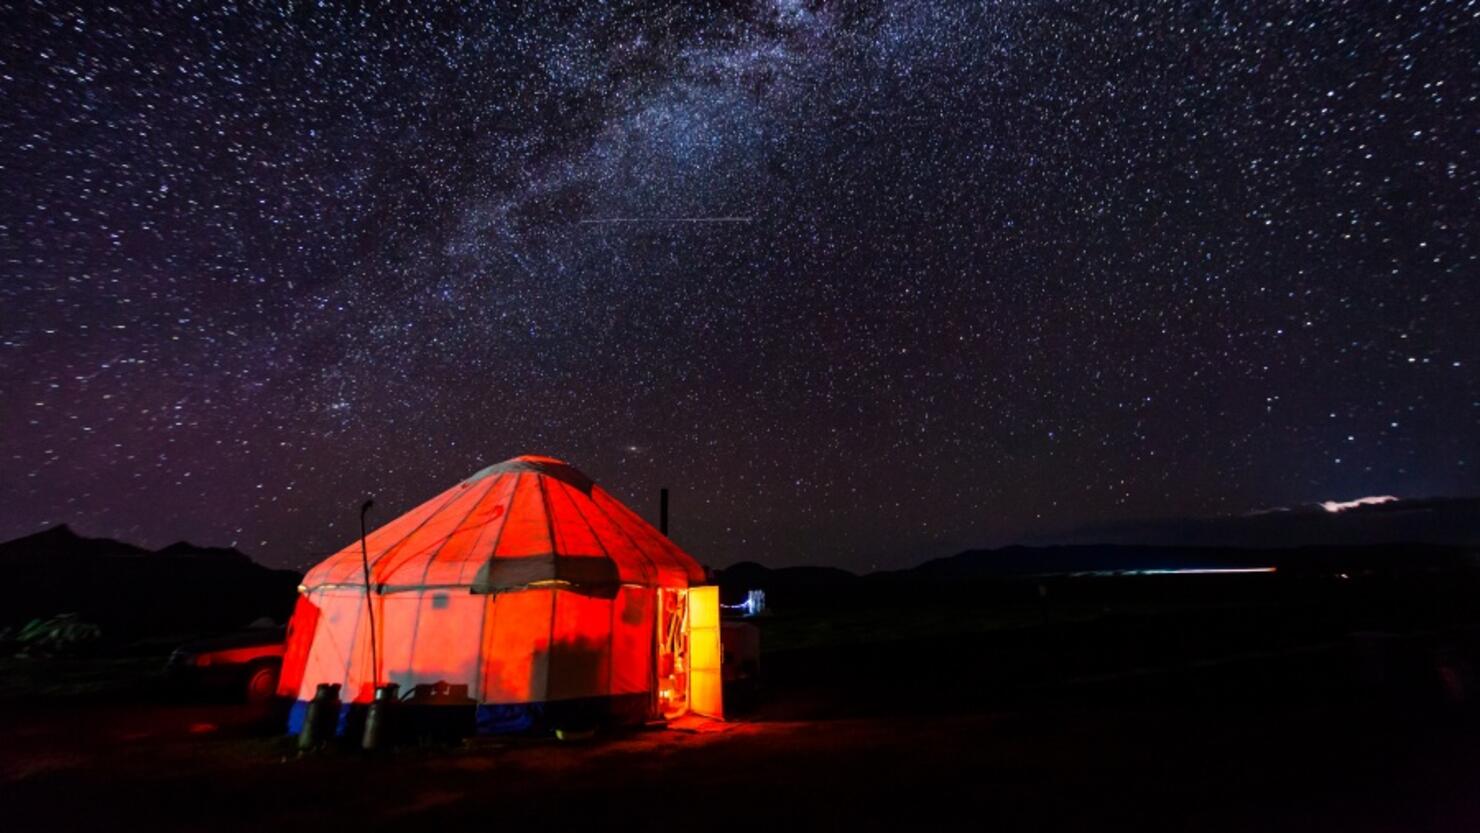 Milky Way over the yurt.